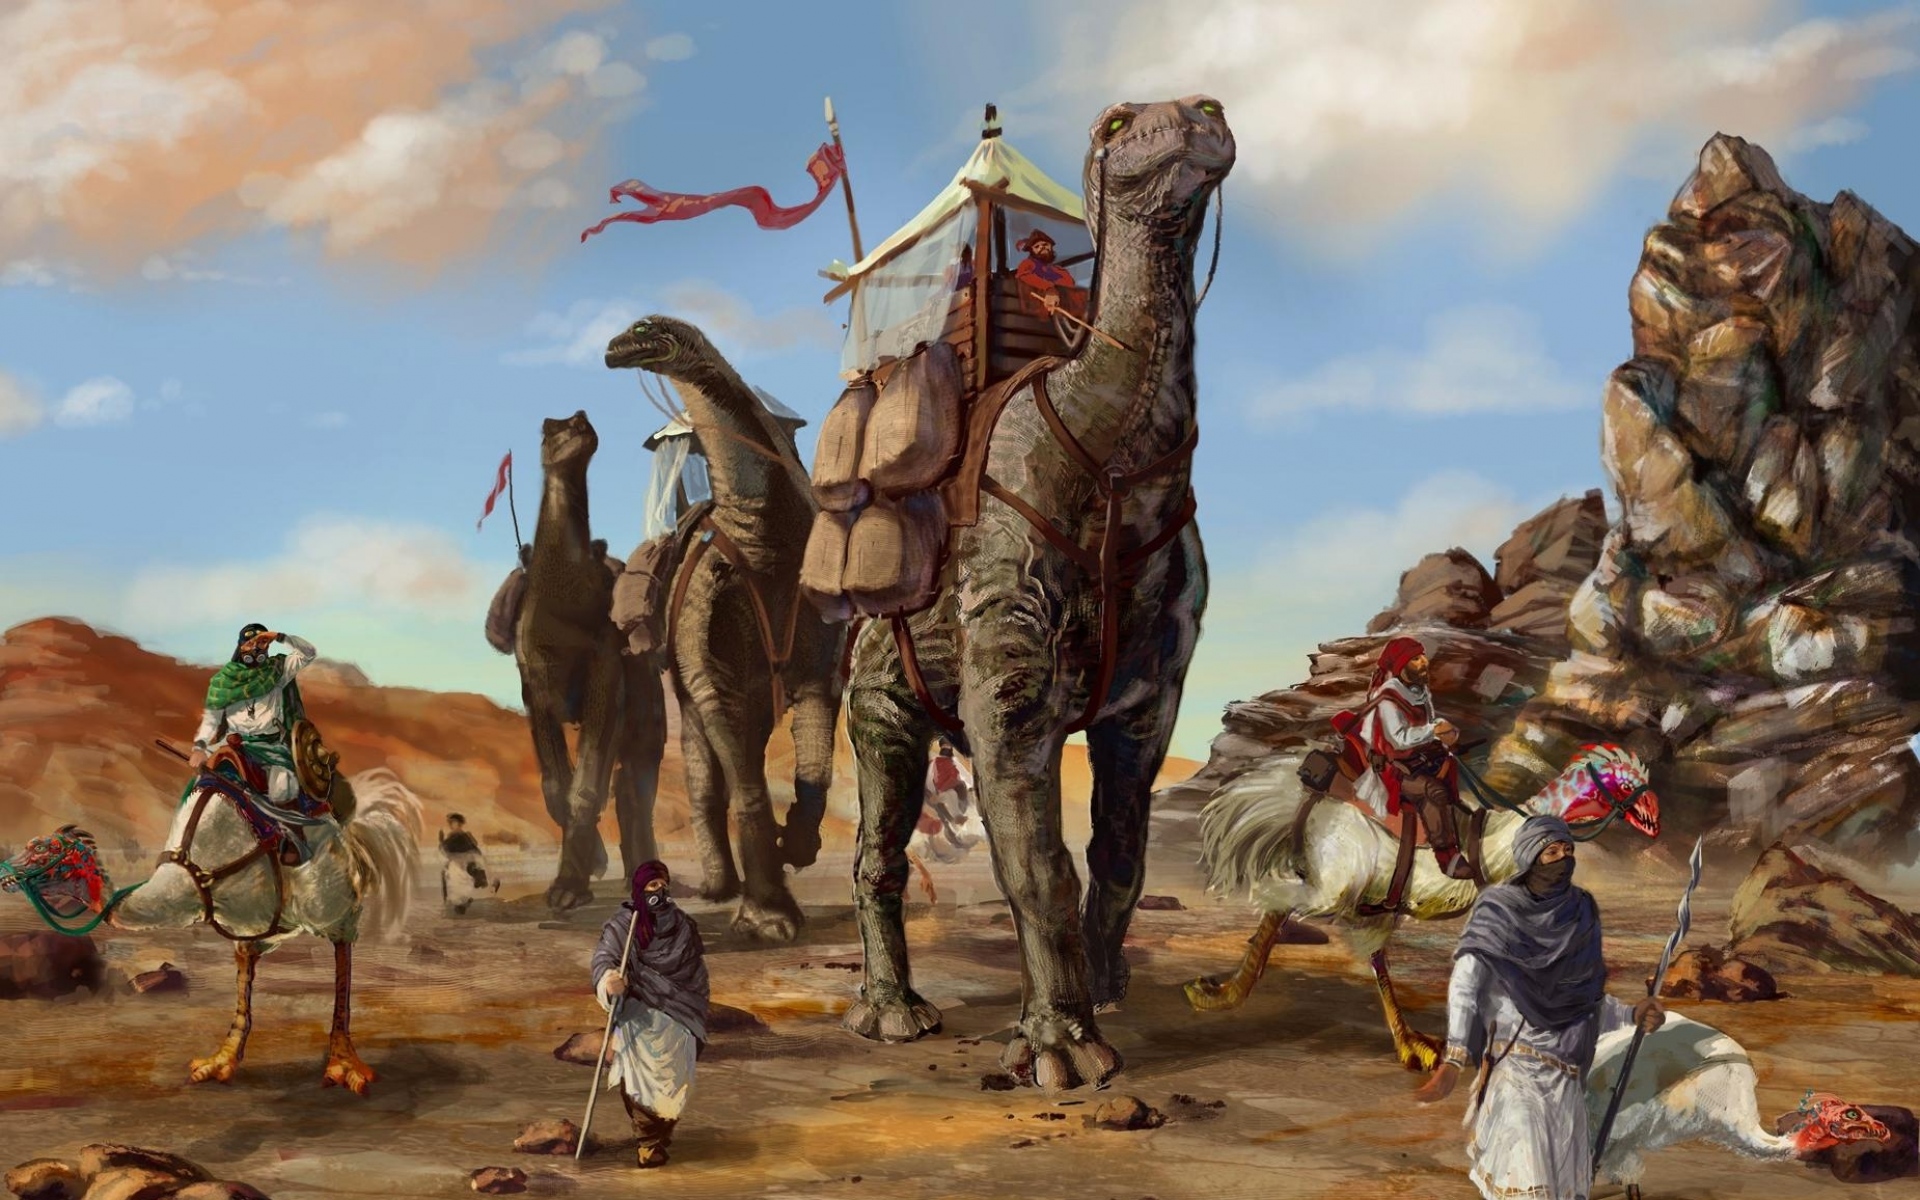 Картинки Пустыня, караван, динозавры, бедуины фото и обои на рабочий стол